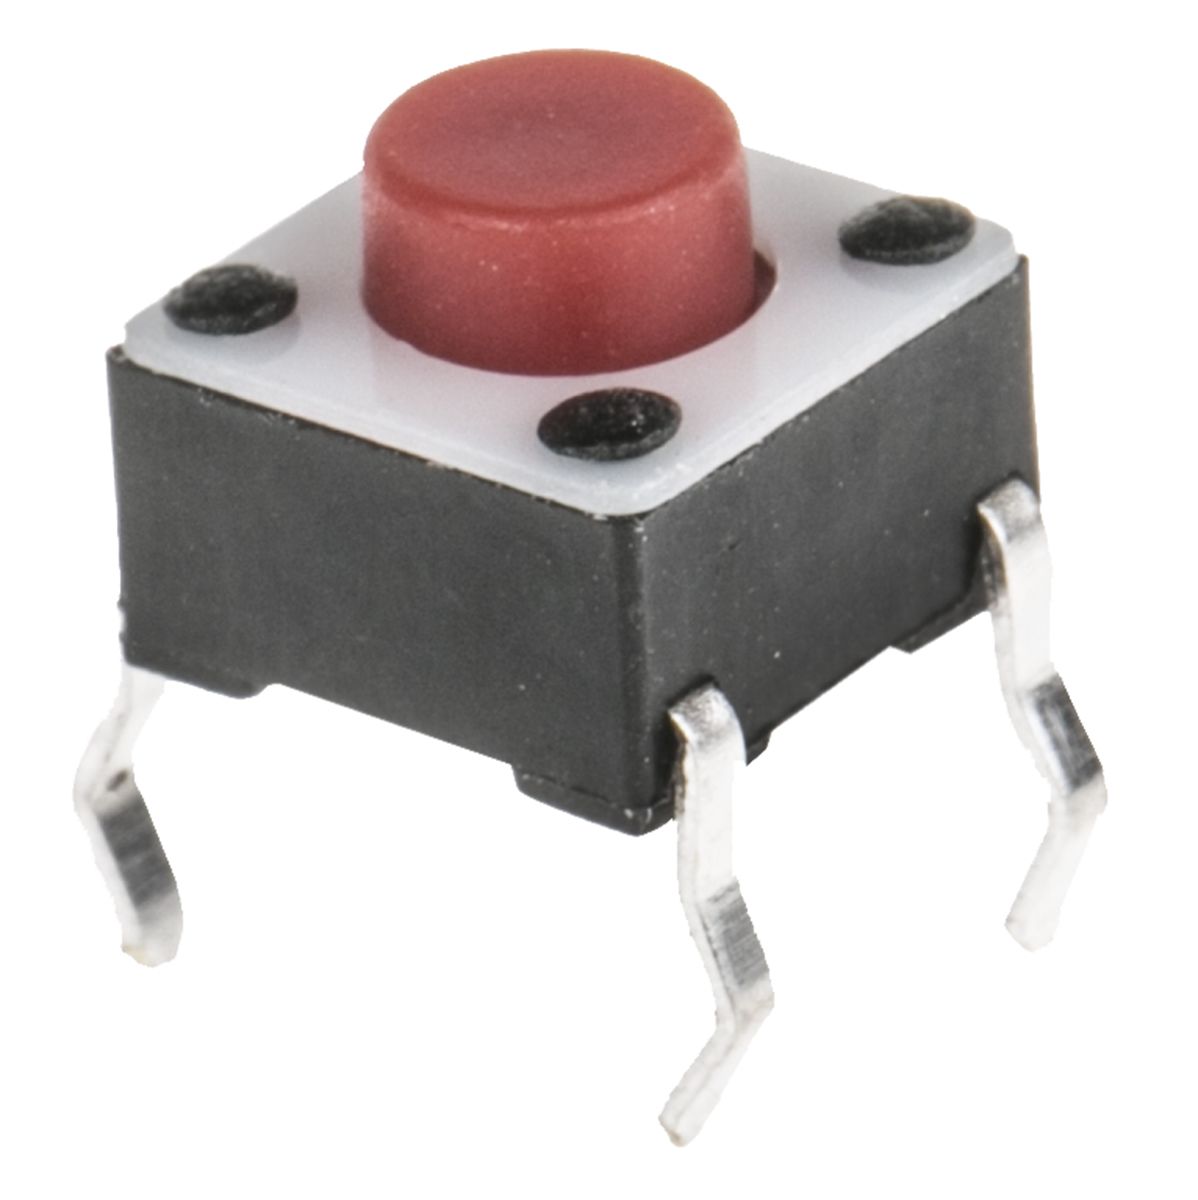 Interruptor táctil tipo Botón, Rojo, contactos Single Pole Single Throw (SPST) 5mm, Montaje superficial